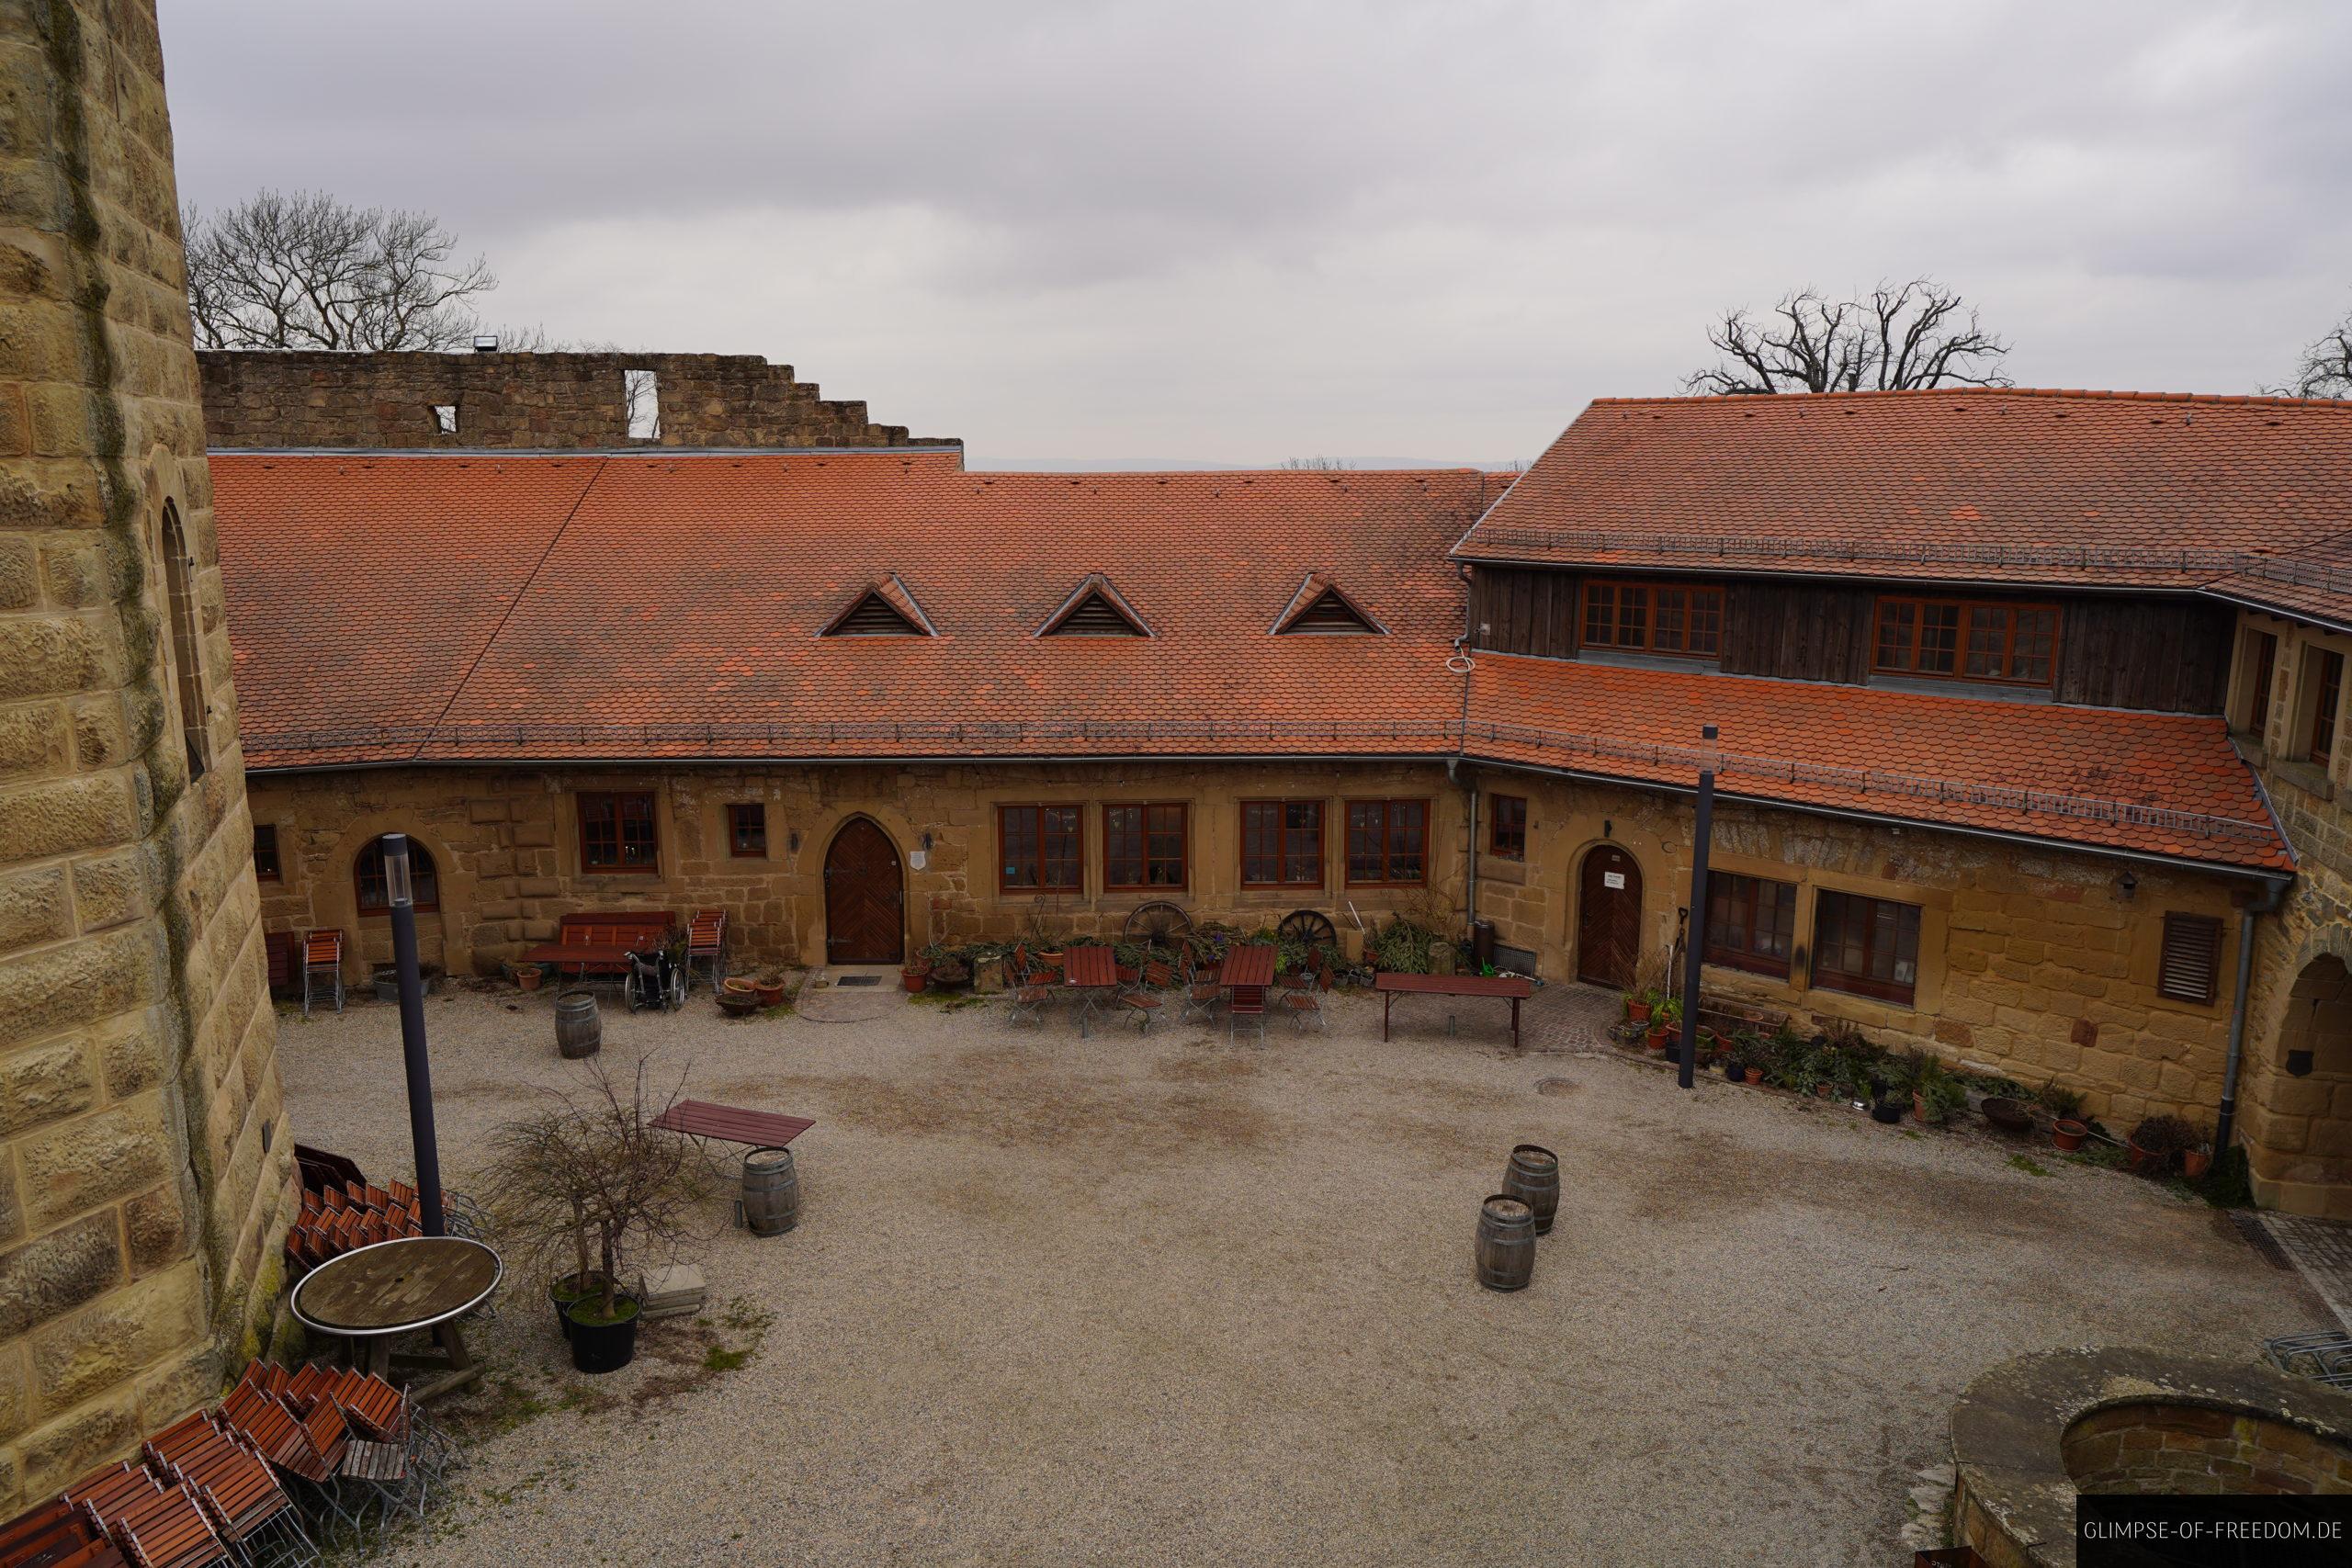 Blick in den Hof der Burg Steinsberg von den Burgmauern aus